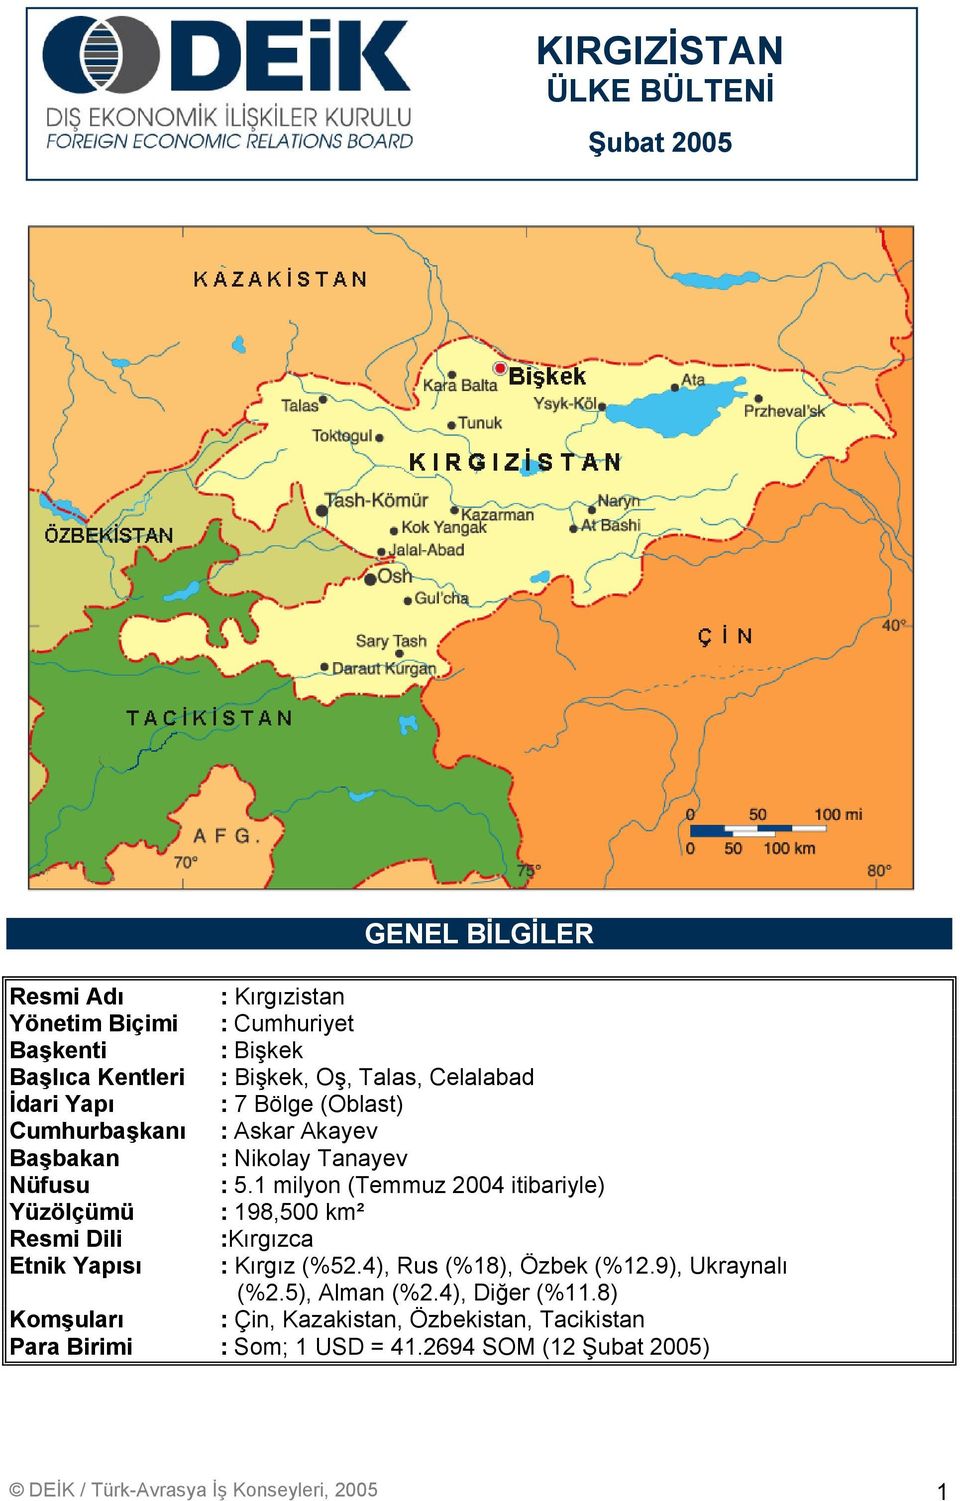 1 milyon (Temmuz 2004 itibariyle) Yüzölçümü : 198,500 km² Resmi Dili :Kırgızca Etnik Yapısı : Kırgız (%52.4), Rus (%18), Özbek (%12.